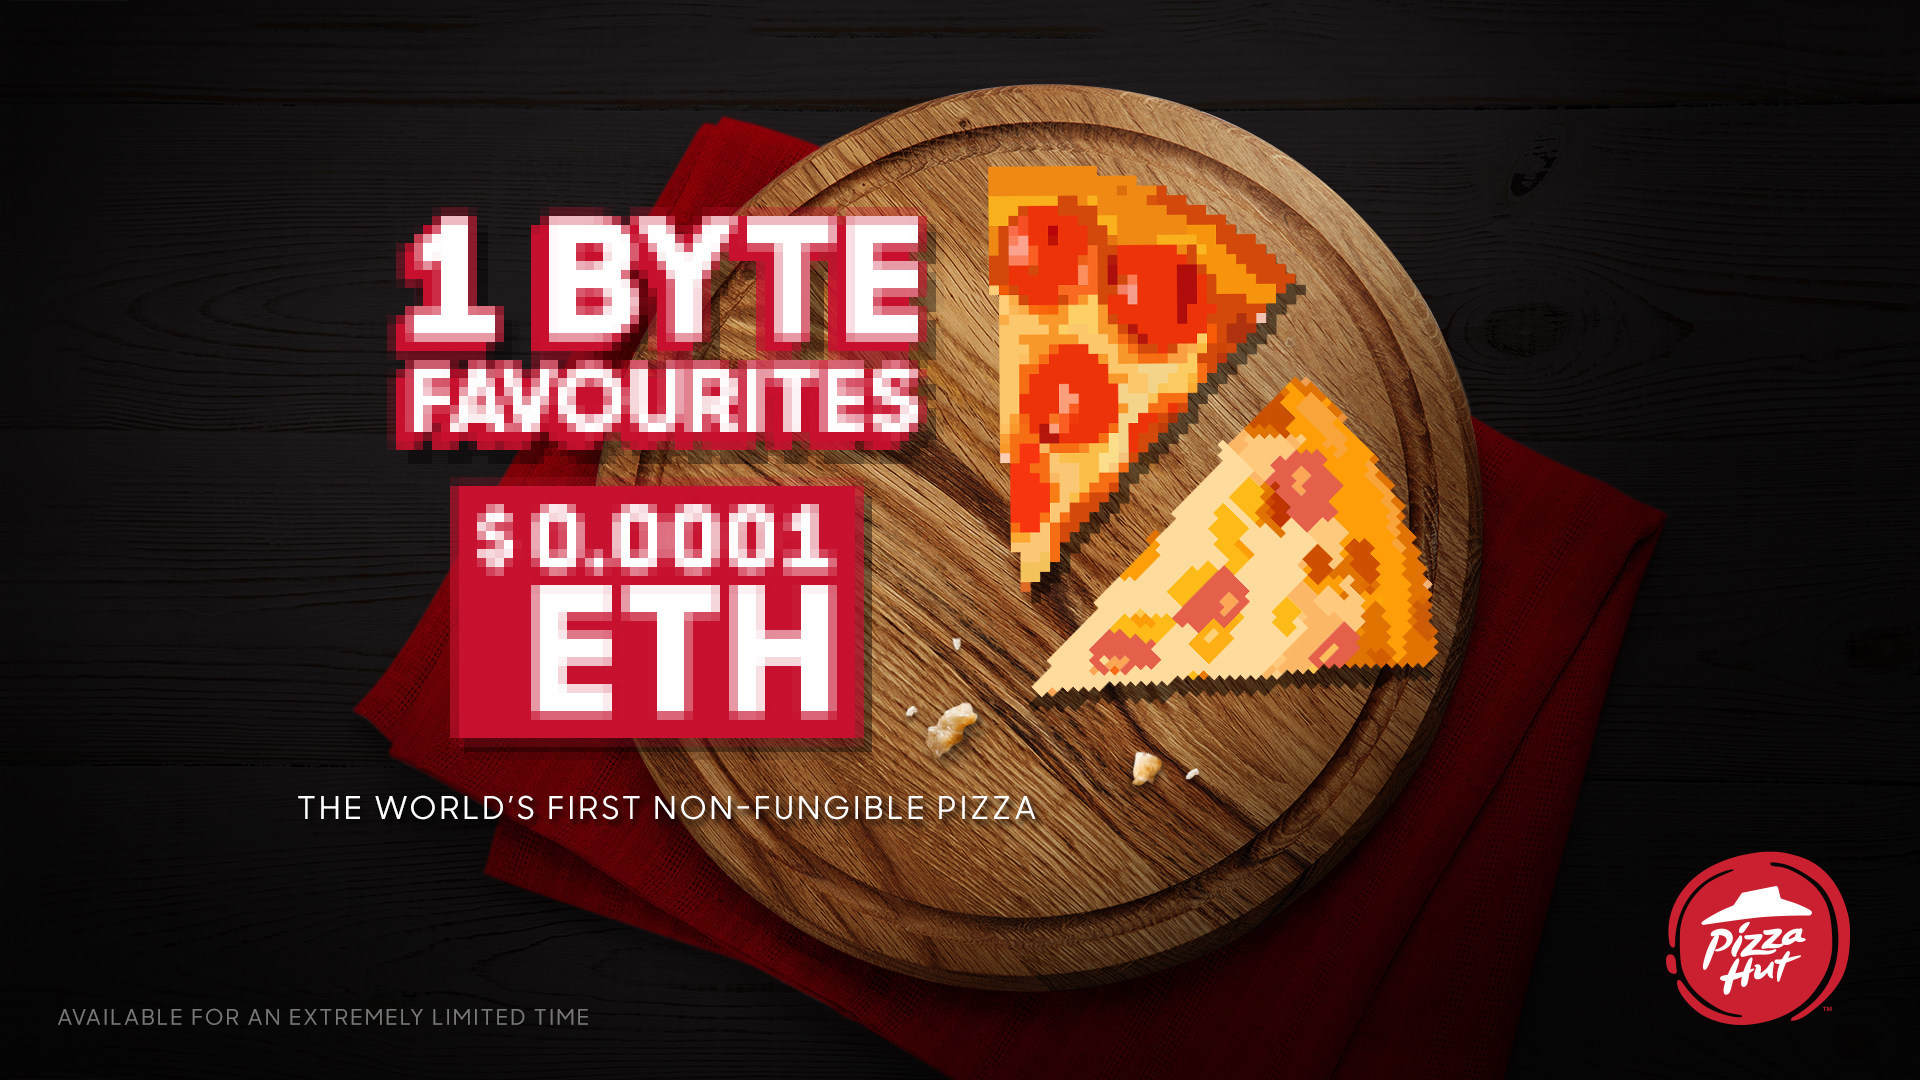 木板上是两片意大利辣香肠披萨的像素图像，风格像早期的电子游戏，文字为“1 Byte favorite， $0.0001 ETH”。